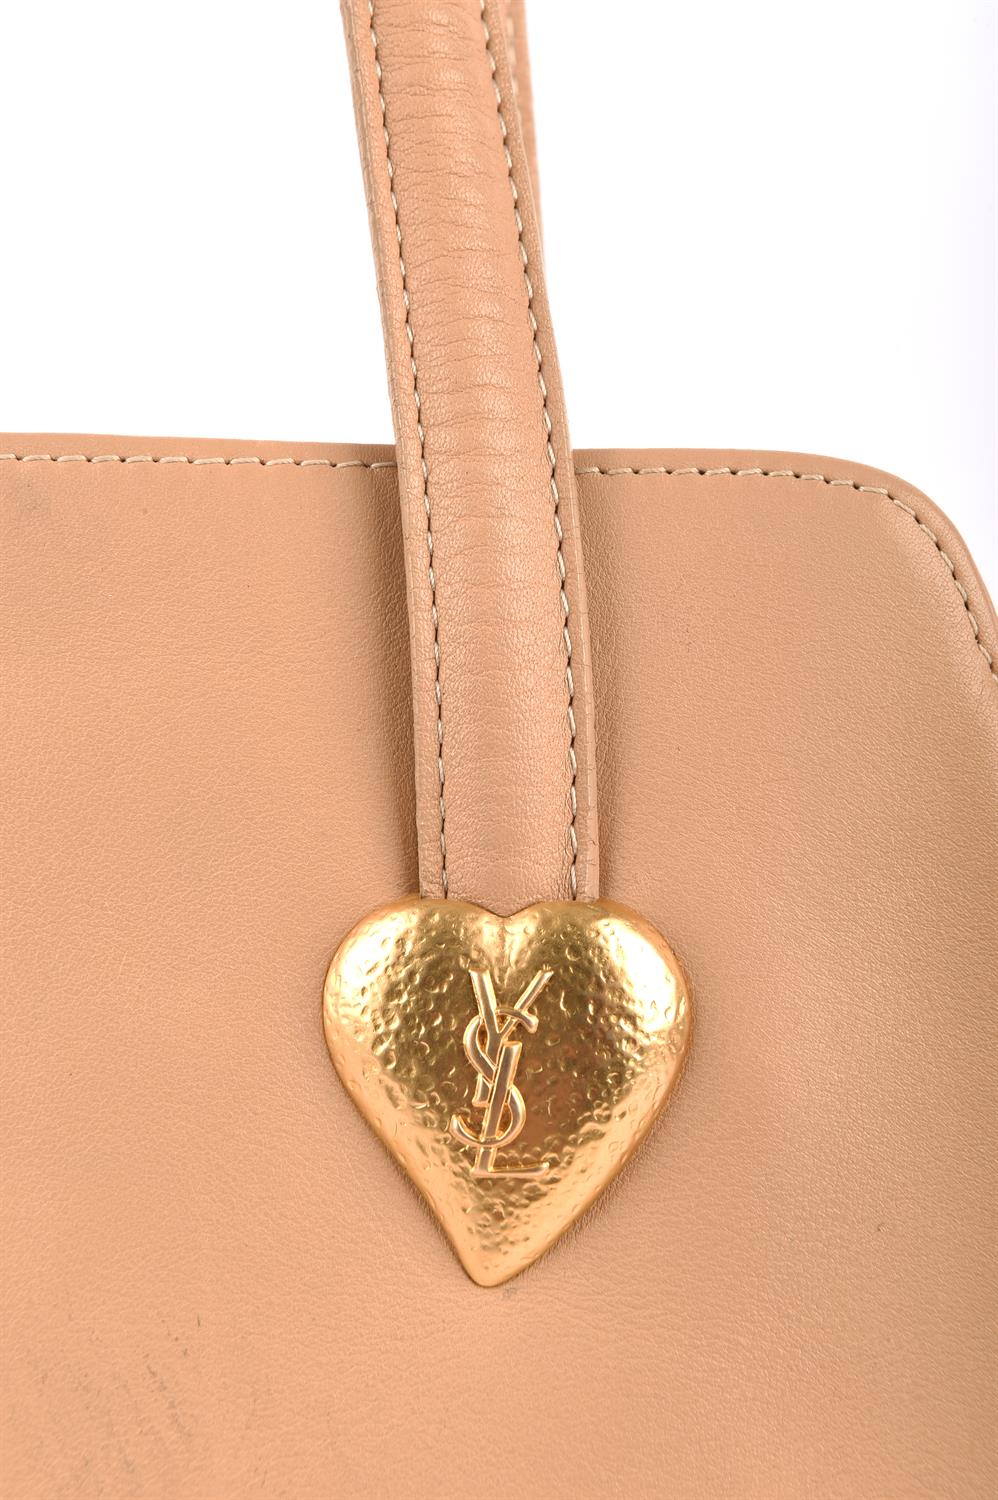 YVES SAINT LAURENT ladies vintage 1990s soft caramel leather shoulder tote handbag with gold - Image 2 of 6